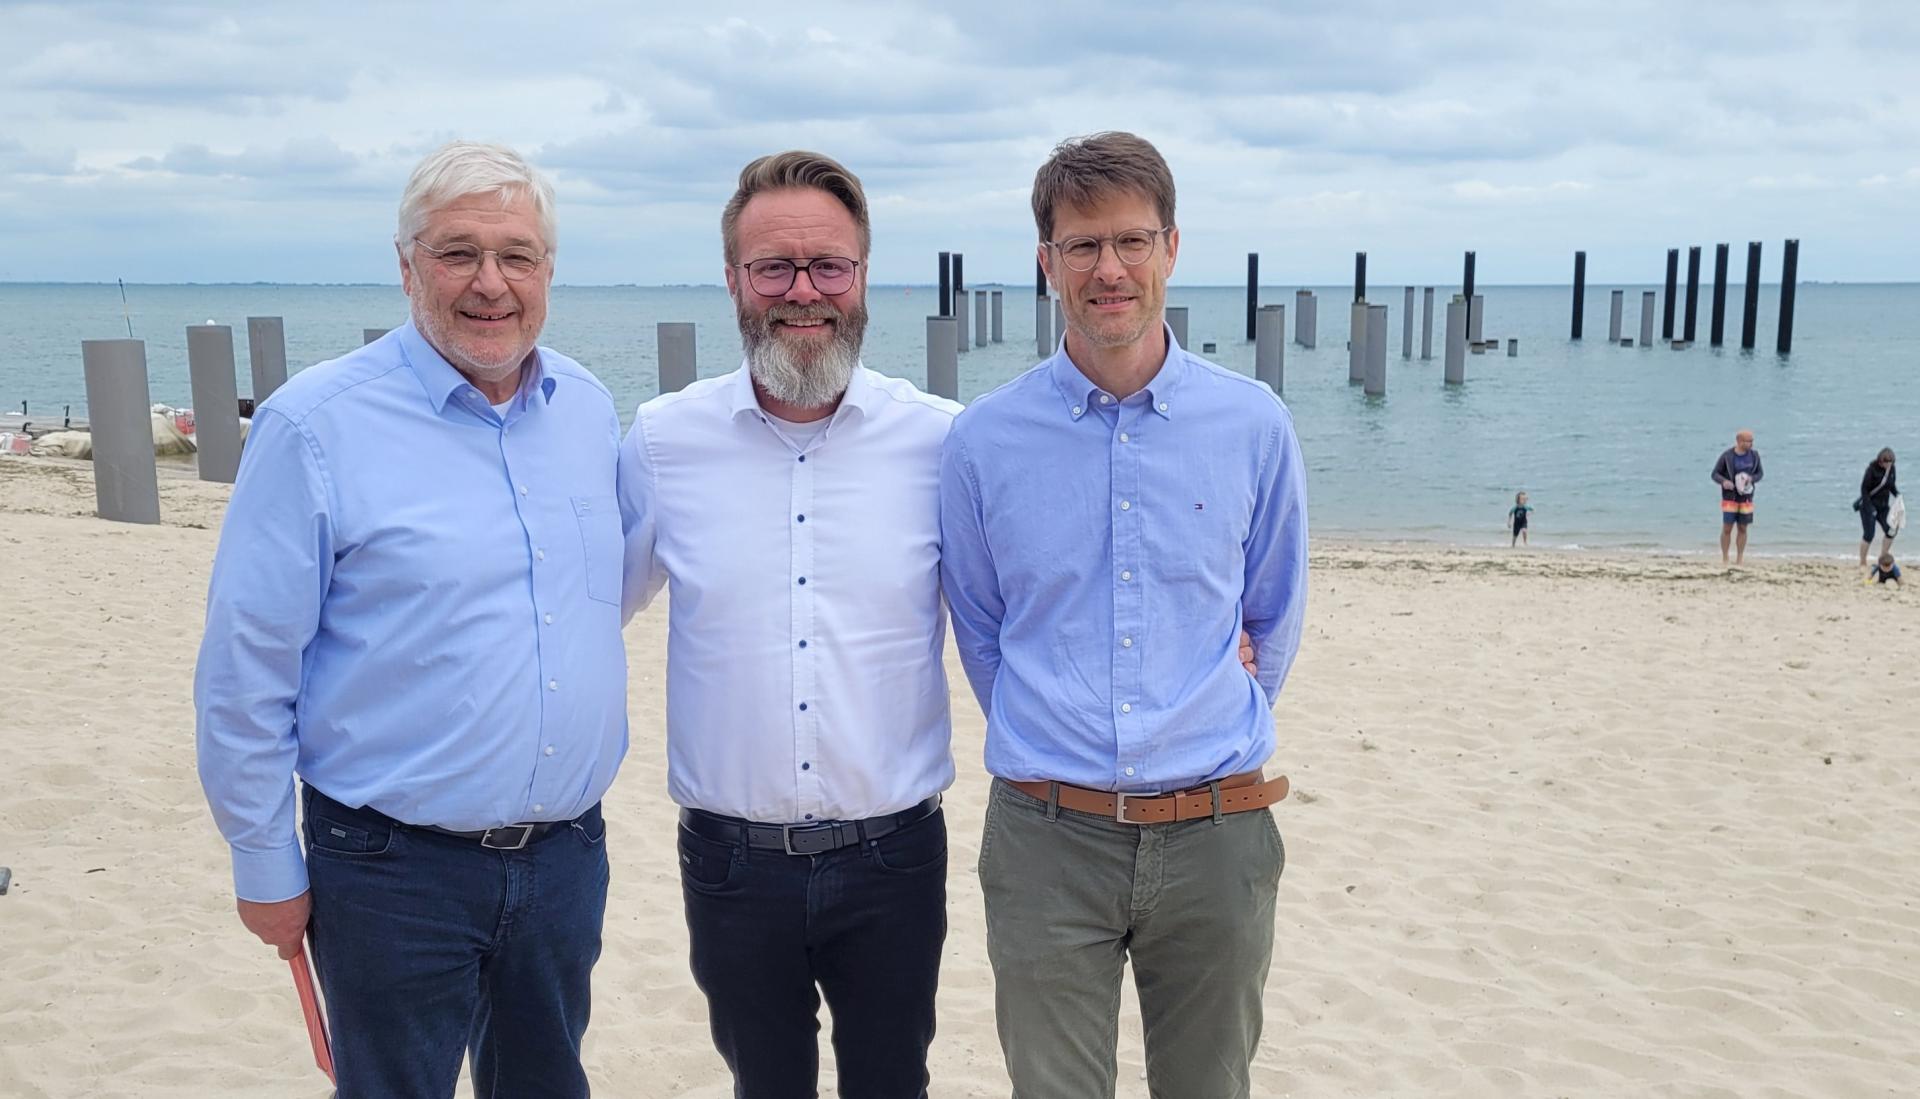 Besuchten auch die Baustelle der Mittelbrücke: Uli Hess, Claus Ruhe Madsen und Christian Stemmer (v.l.). Foto: Peter Schulze